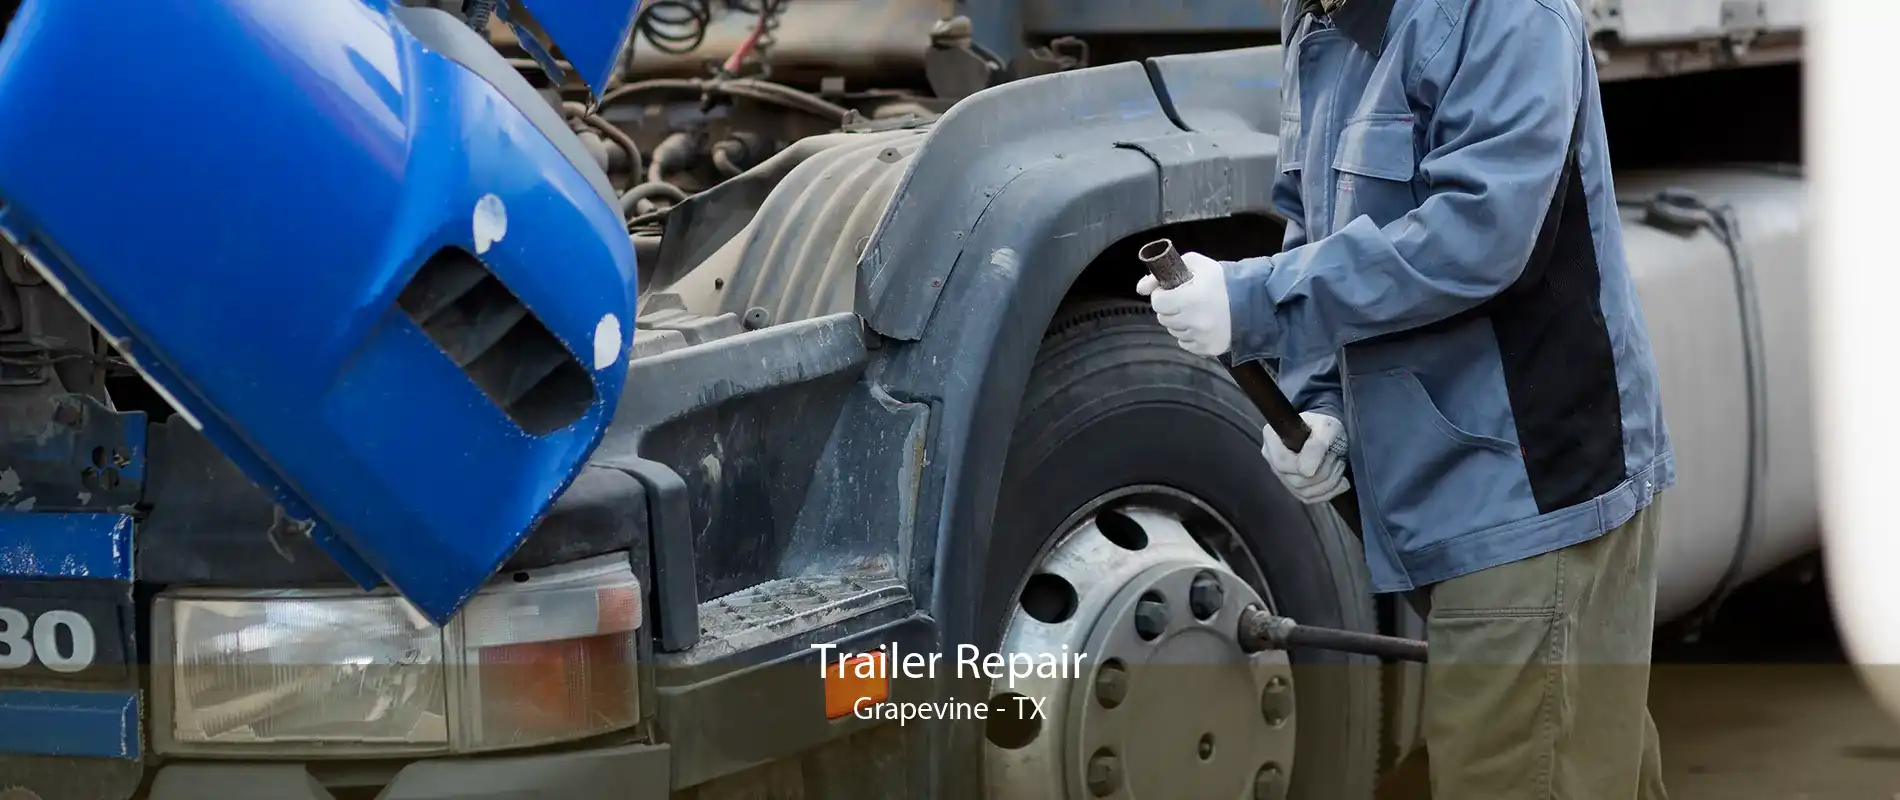 Trailer Repair Grapevine - TX